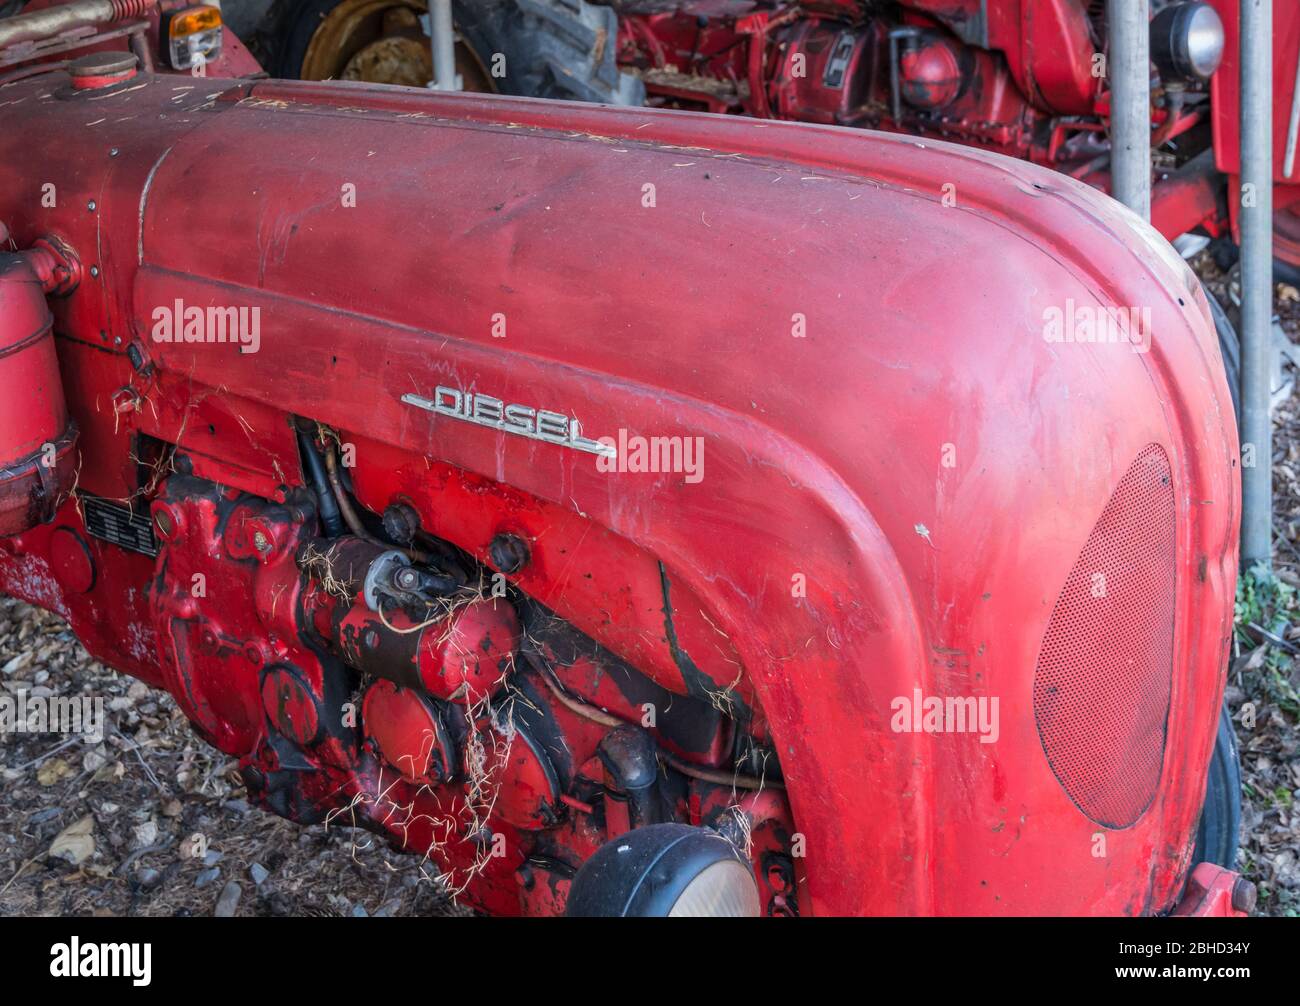 Porsche Diesel Super Old Vintage Red Tractor. Vecchio trattore in un'azienda agricola in Alto Adige, Italia settentrionale - Europa, gennaio 2019 Foto Stock